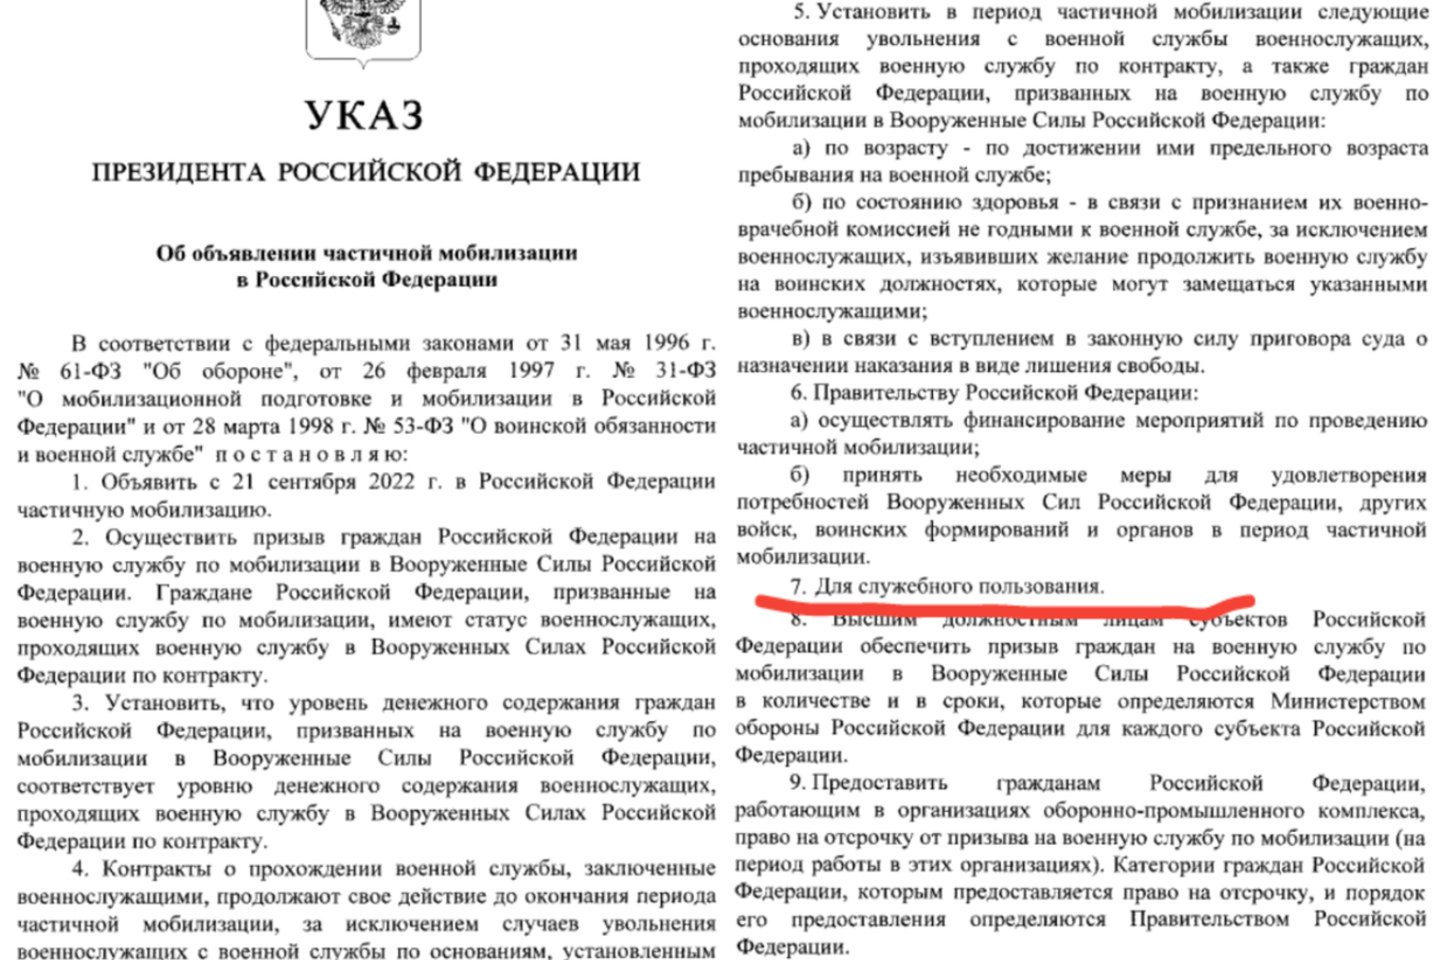 Ištrauka iš 2022 m. rugsėjo 21 d. Rusijos Federacijos prezidento dekreto Nr. 647 „Dėl dalinės mobilizacijos Rusijos Federacijoje paskelbimo“. Septintajame punkte rusų k. nurodyta – „tarnybiniam naudojimui“.<br>Stopkadras.